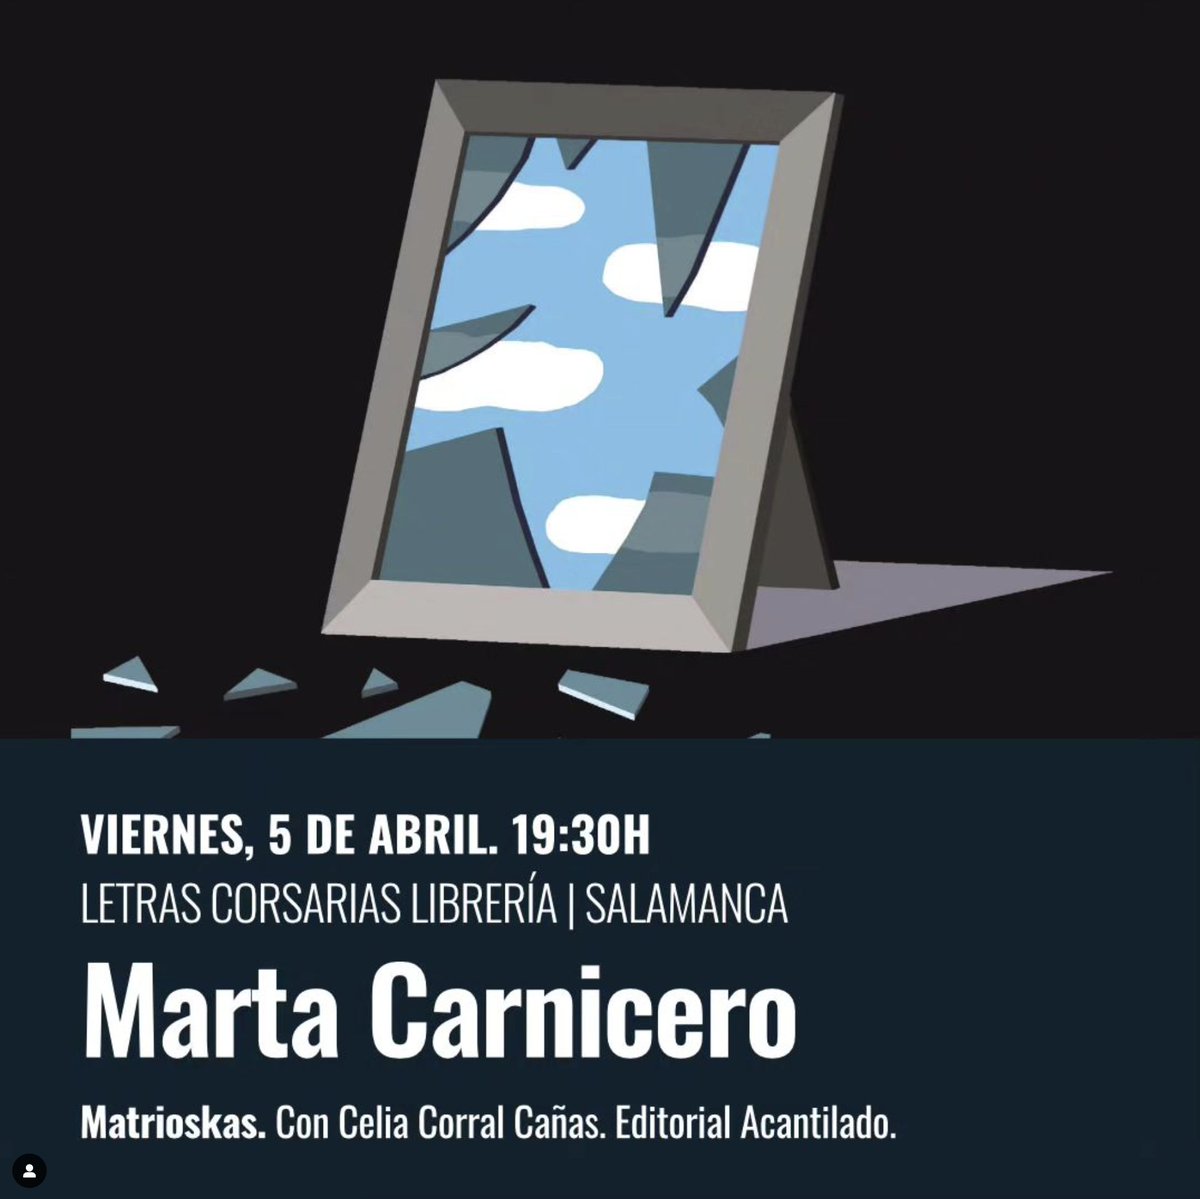 Mañana viernes 5 de abril la escritora @CarniceroMarta presentará «Matrioskas» en la librería @LetrasCorsarias (Salamanca). La autora estará acompañada de Celia Corral Cañas. ¡Os esperamos!